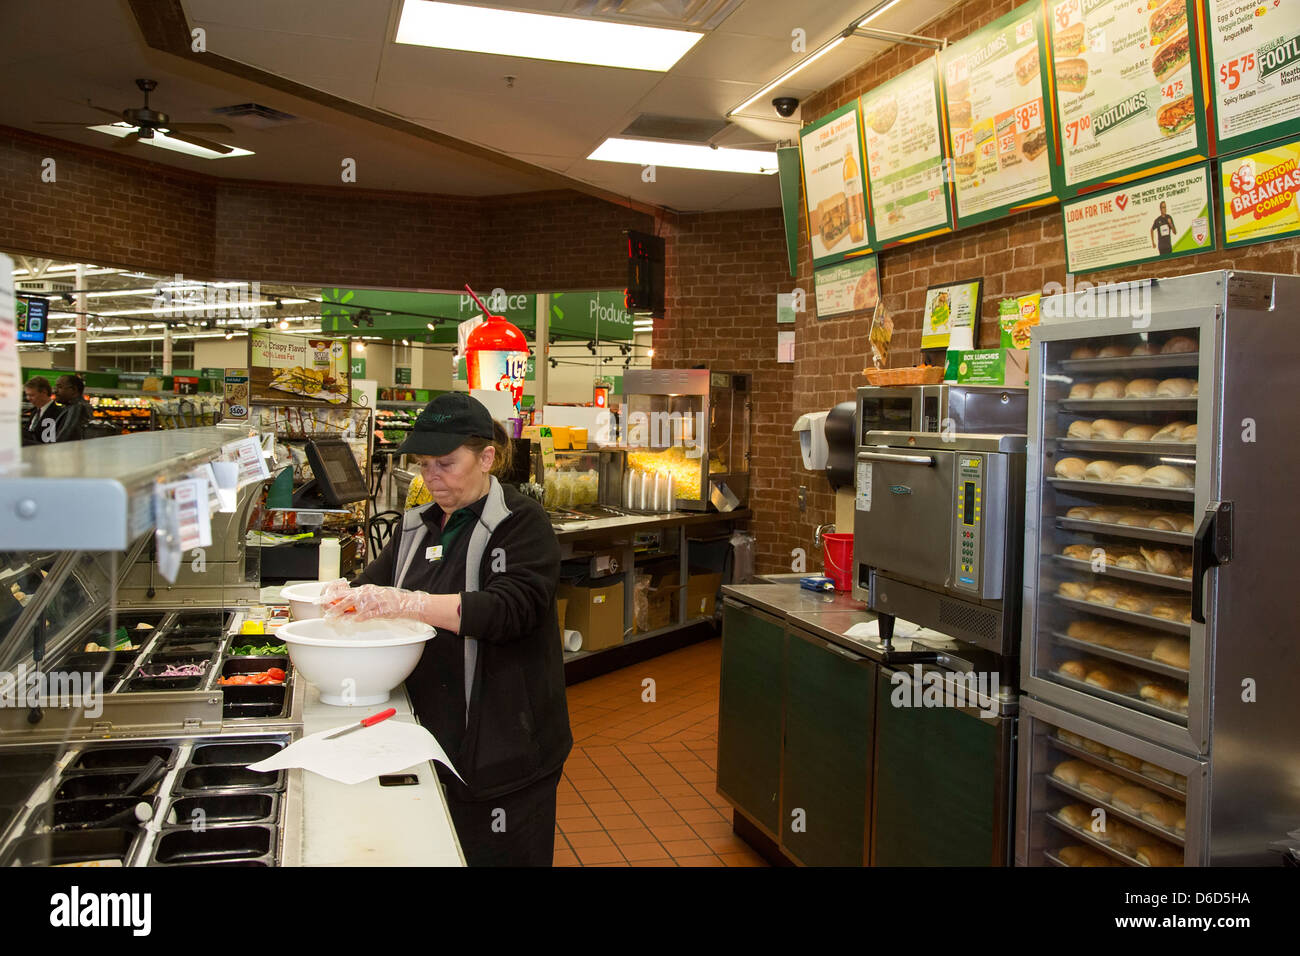 Sterling Heights, Michigan - un travailleur prépare la nourriture à une franchise de restauration rapide Subway situé à l'intérieur d'un magasin Walmart. Banque D'Images